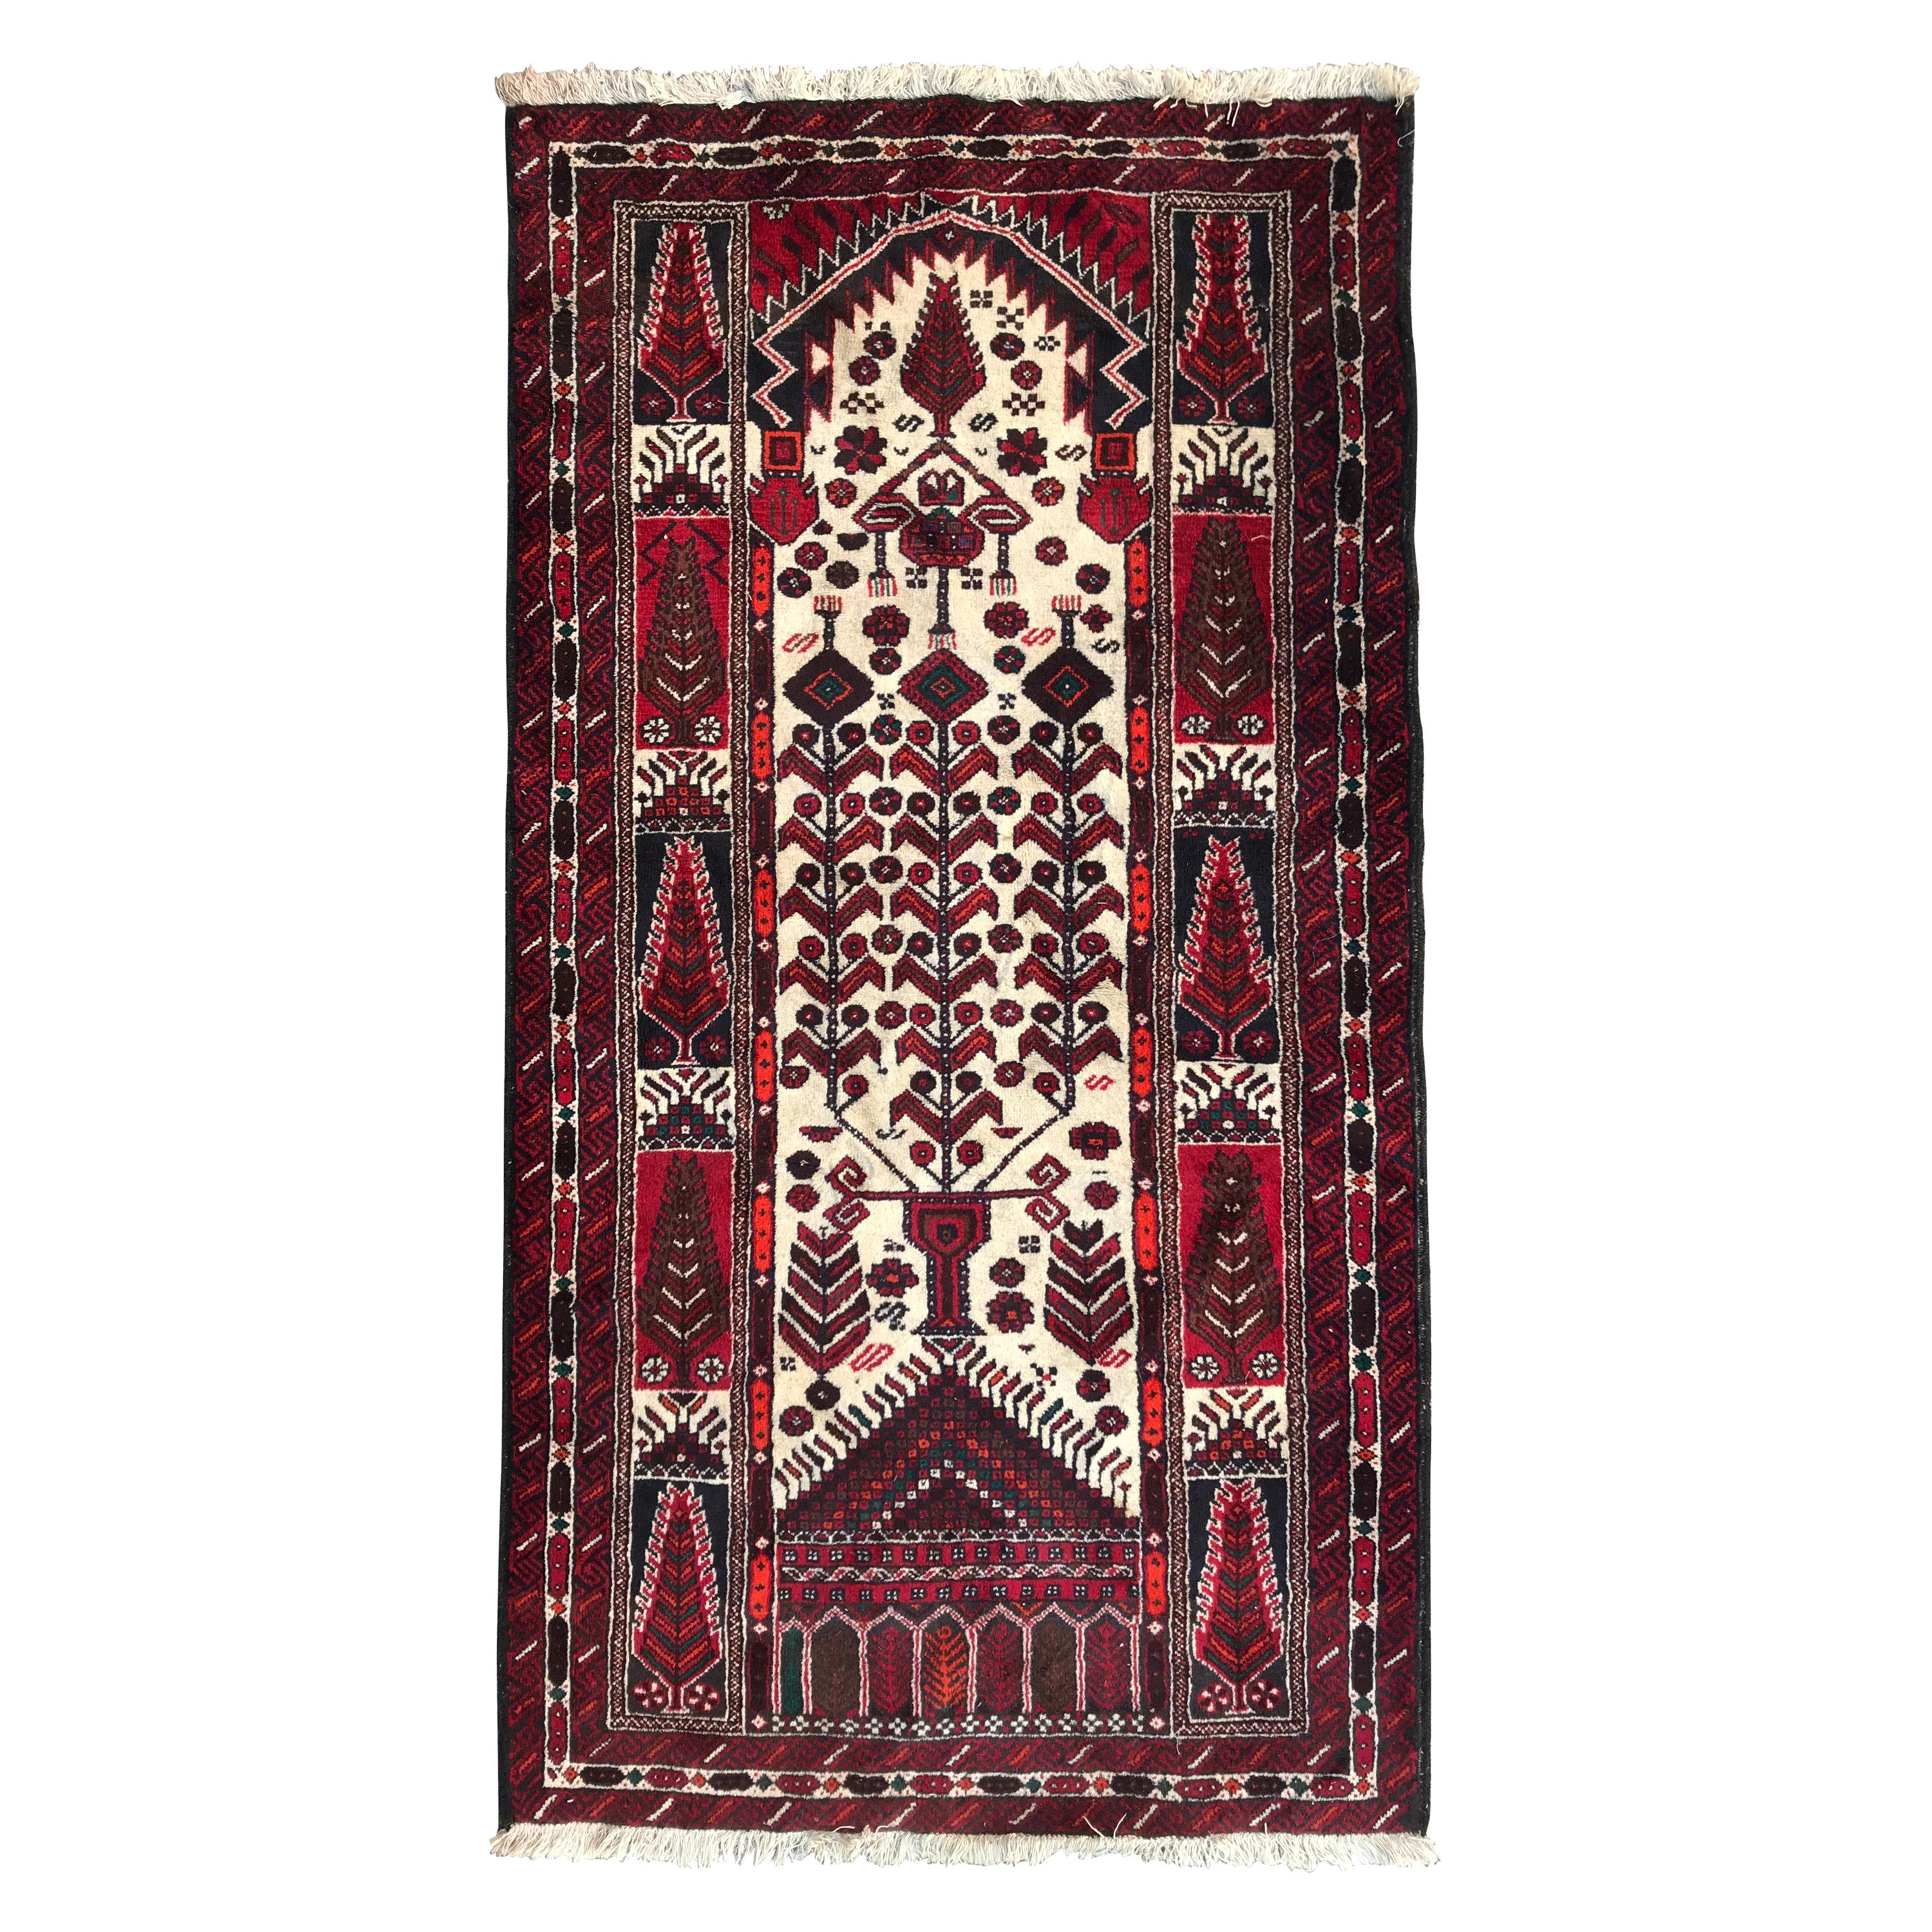 Bobyrugs schöner turkmenischer Belutschen-Teppich im Vintage-Stil